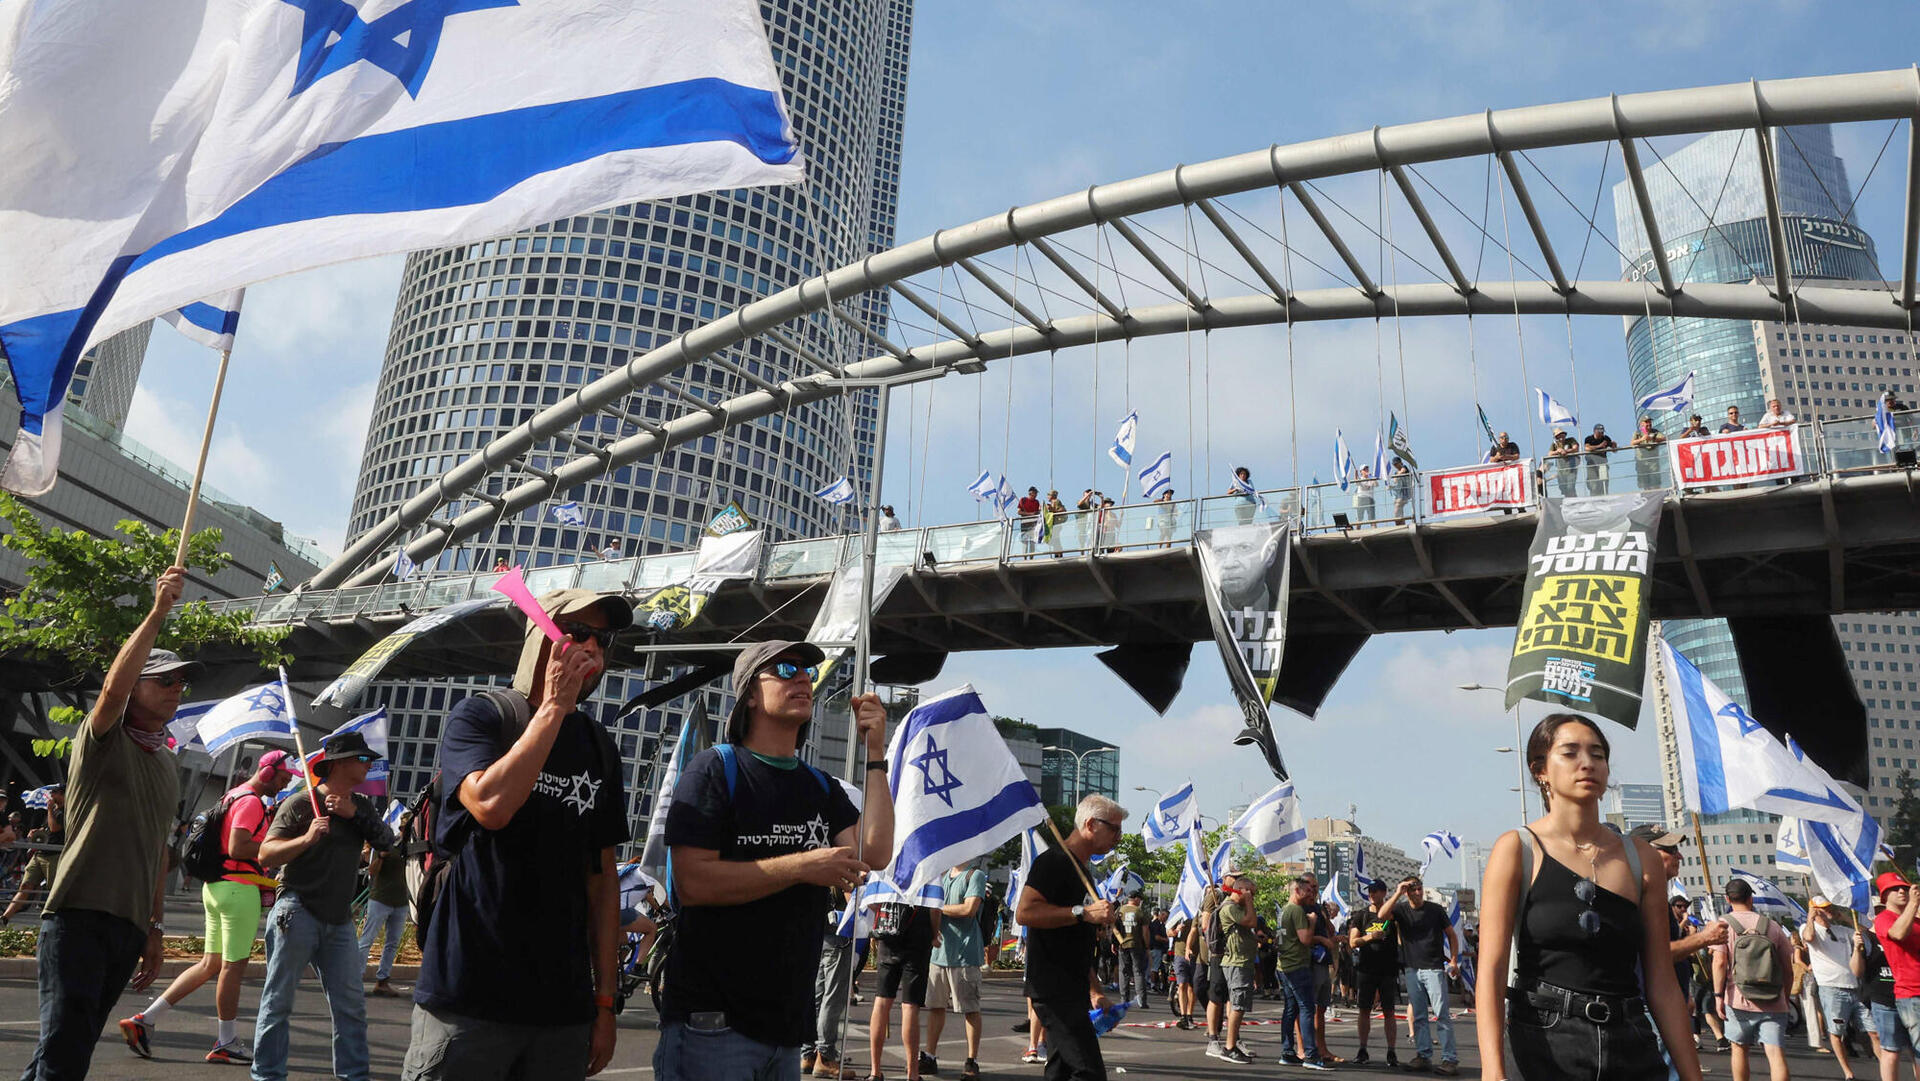 הפגנה נגד המהפכה המשפטית מפגינים מול בסיס הקריה בתל אביב